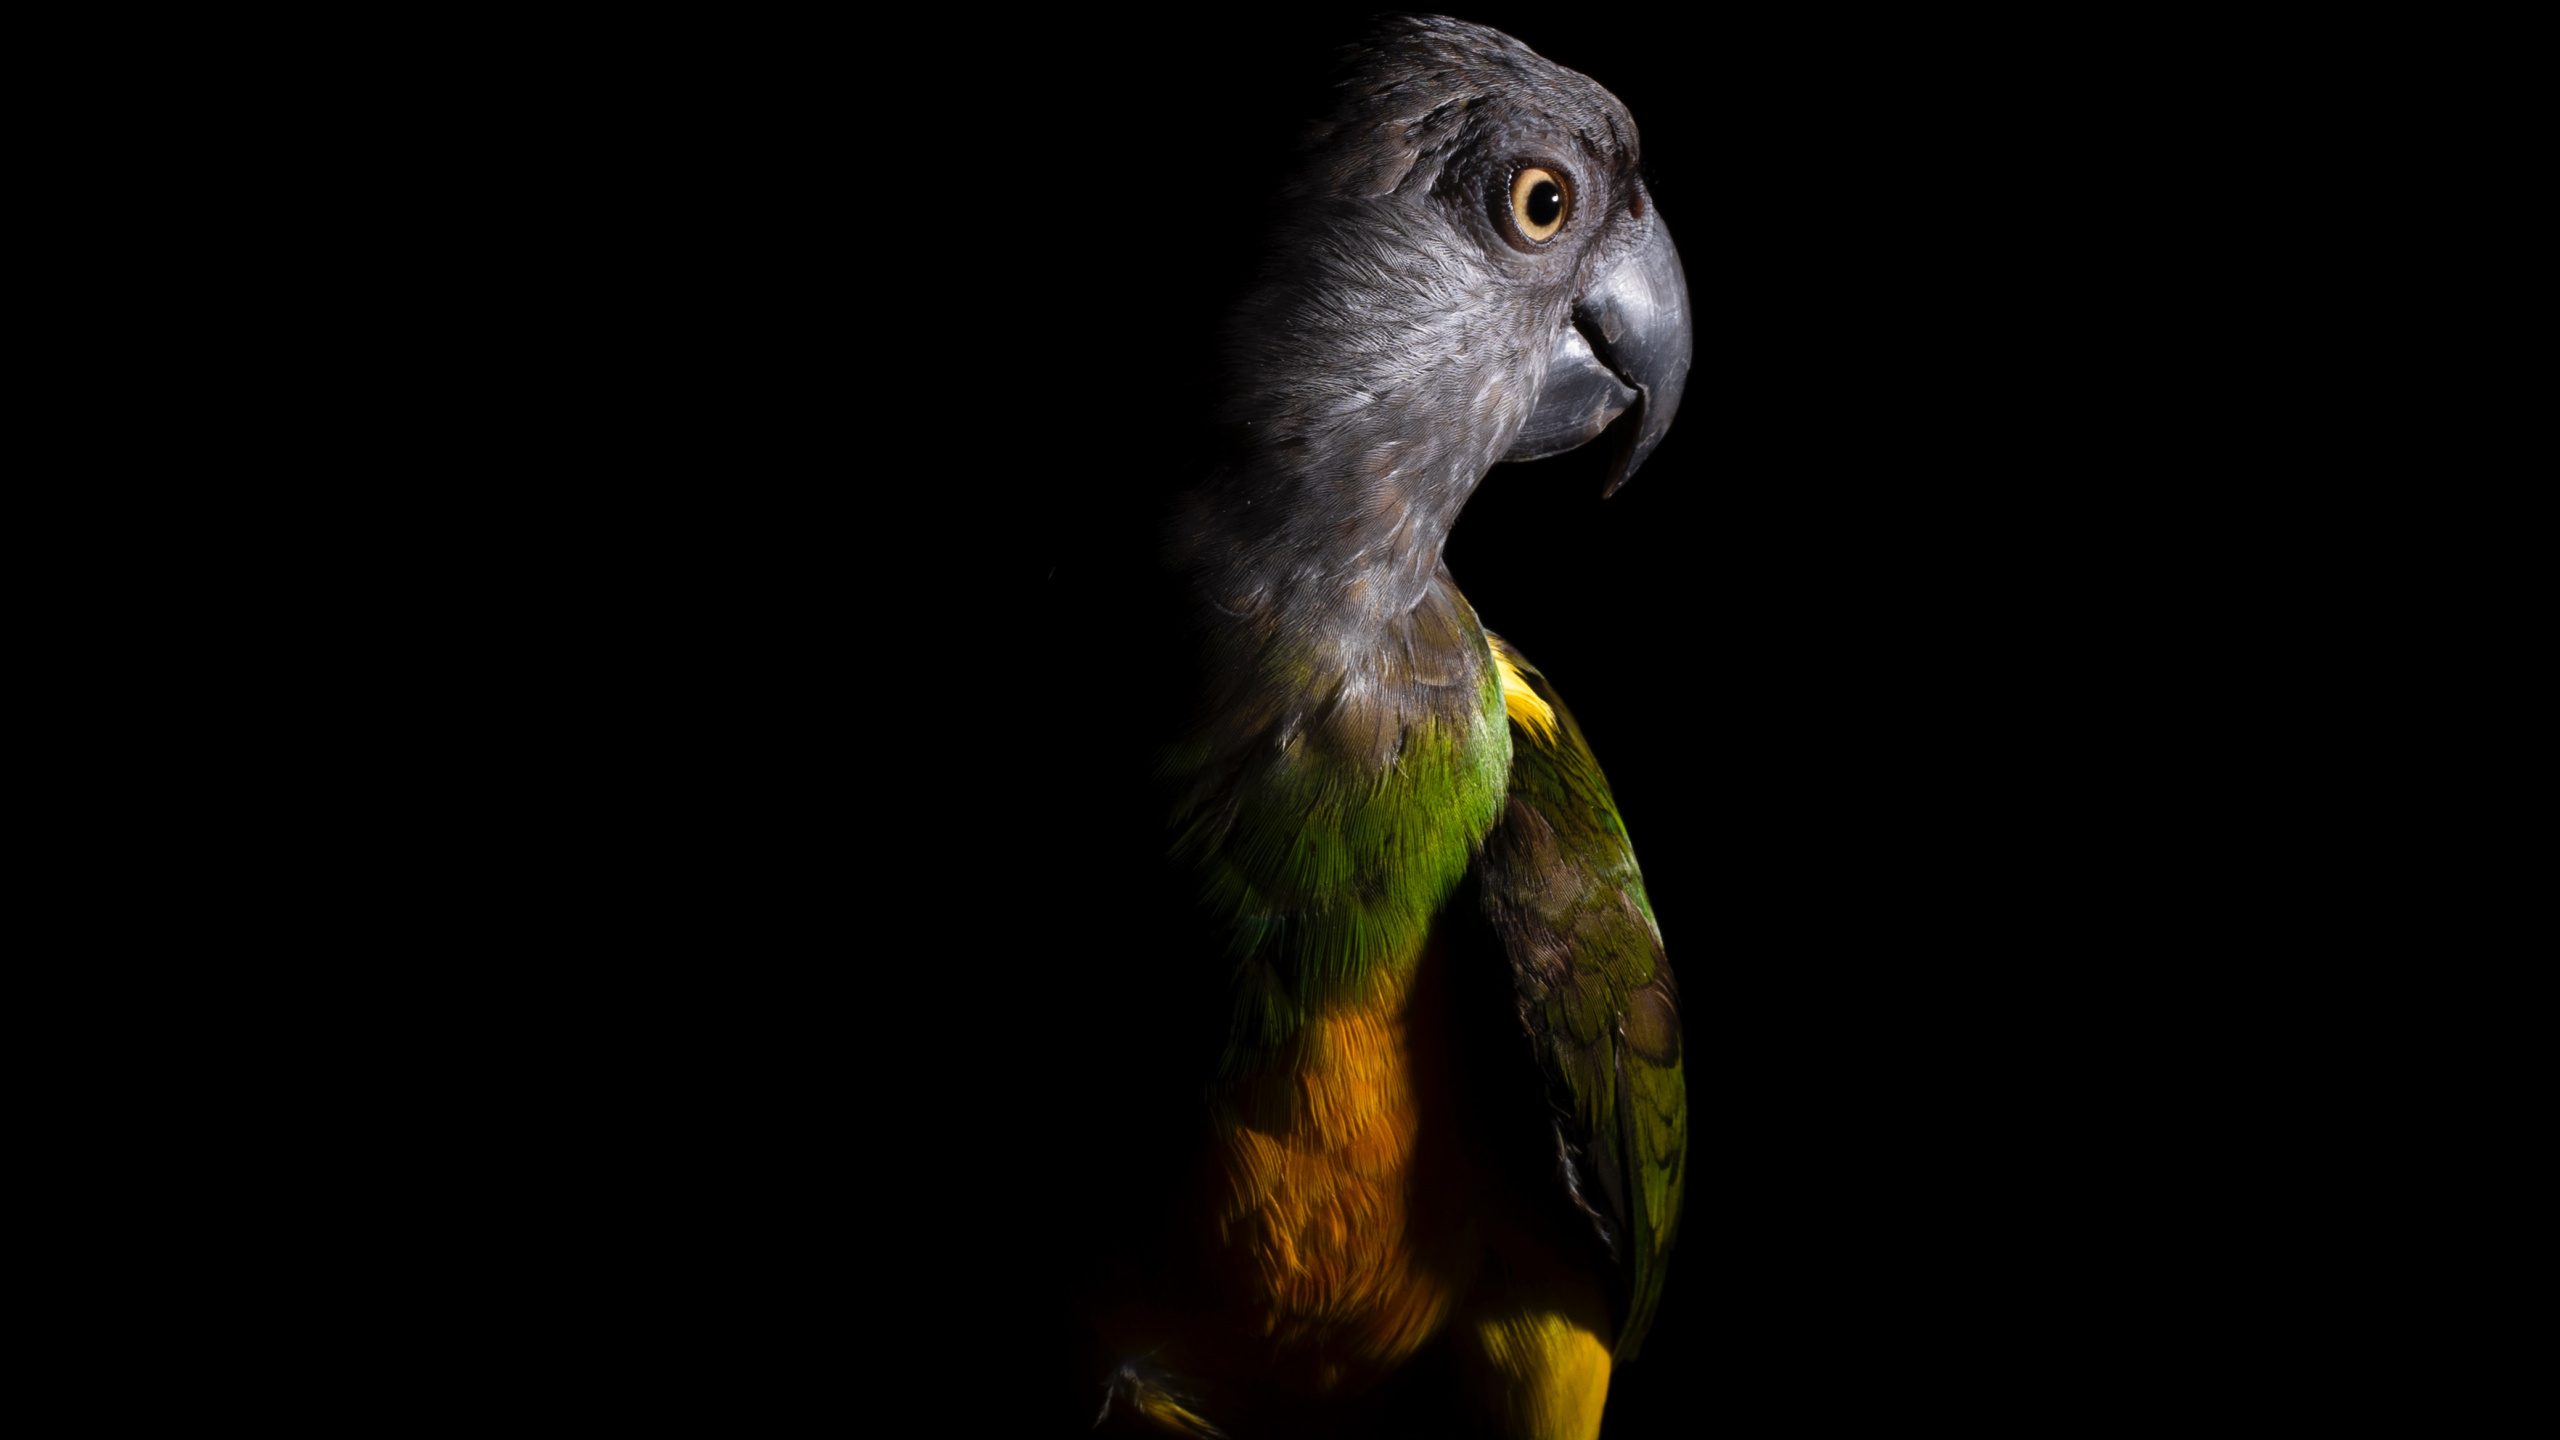 Schwarz-gelbe Vogelillustration. Wallpaper in 2560x1440 Resolution